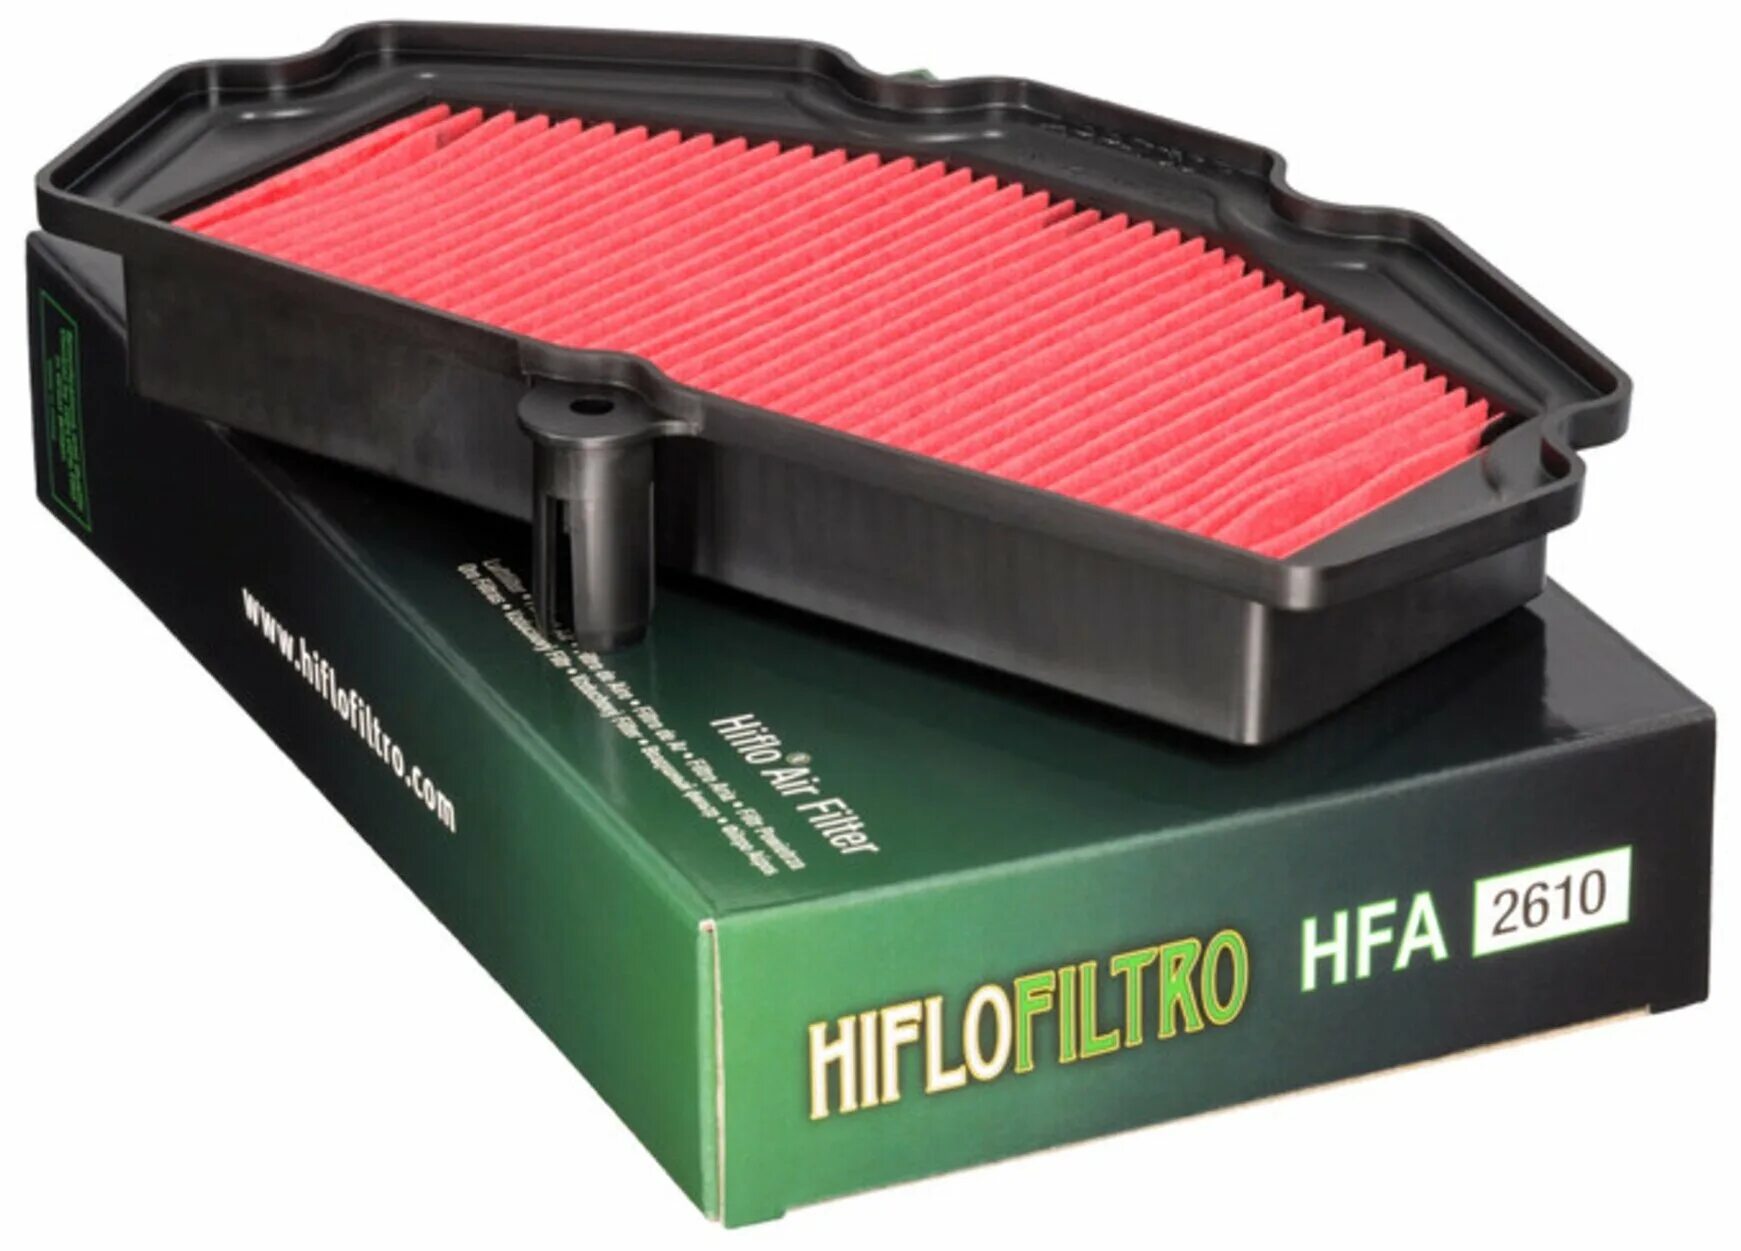 Воздушные фильтры барнаул. Фильтр воздушный HIFLO hff4012. Фильтр воздушный hfa2610. Воздушный фильтр Kawasaki 11013. Воздушный фильтр HIFLO Kawasaki 2607.